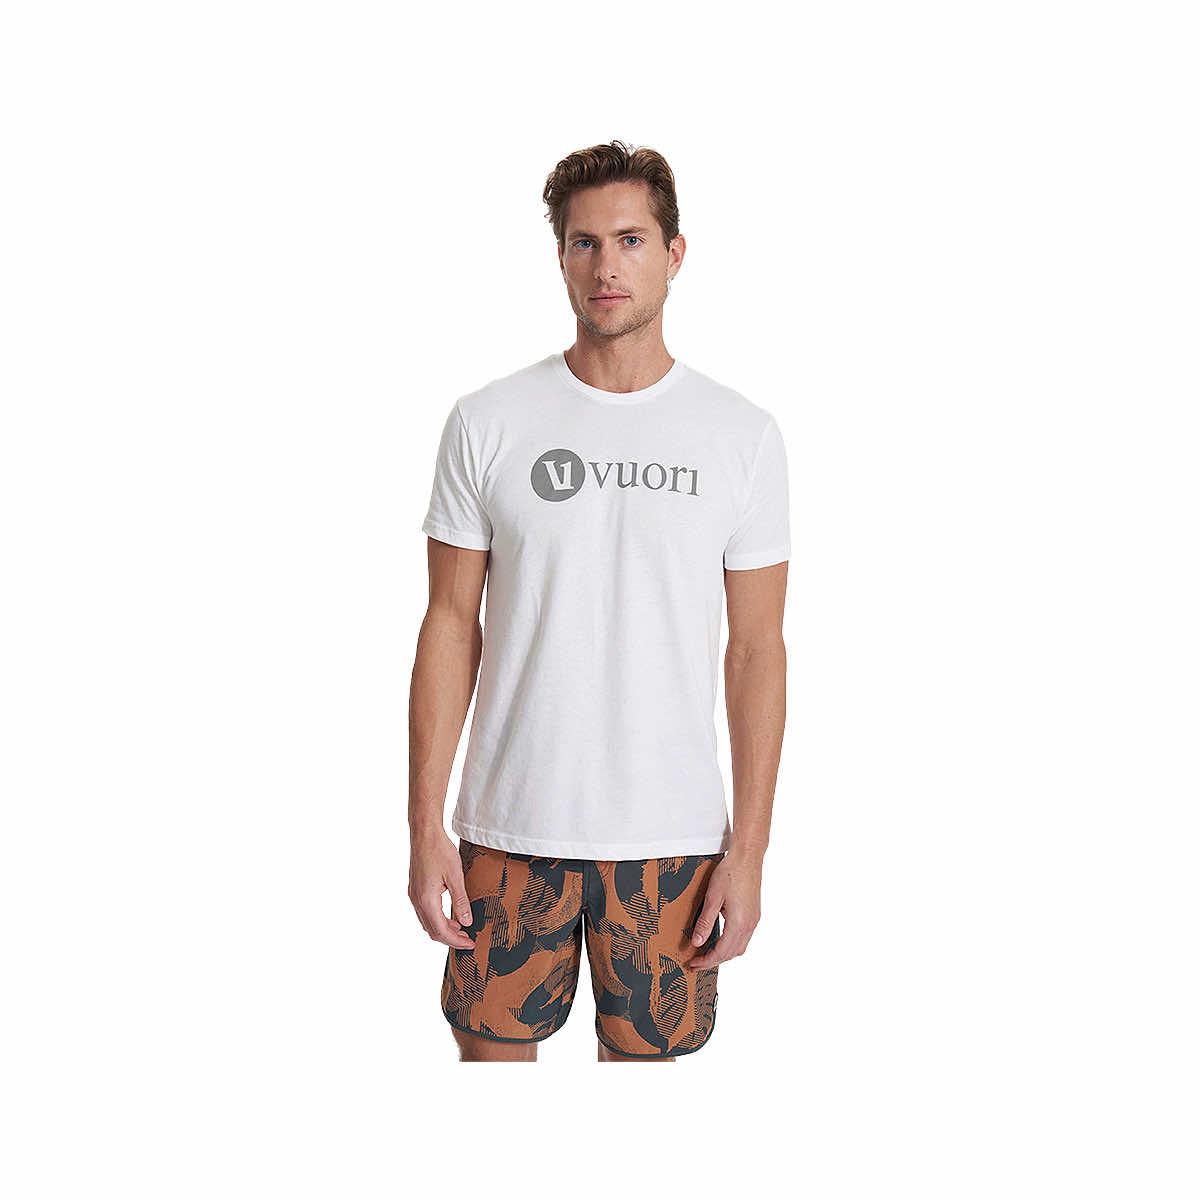 Mountain High Outfitters Men's Duck Head Logo Short Sleeve T-Shirt